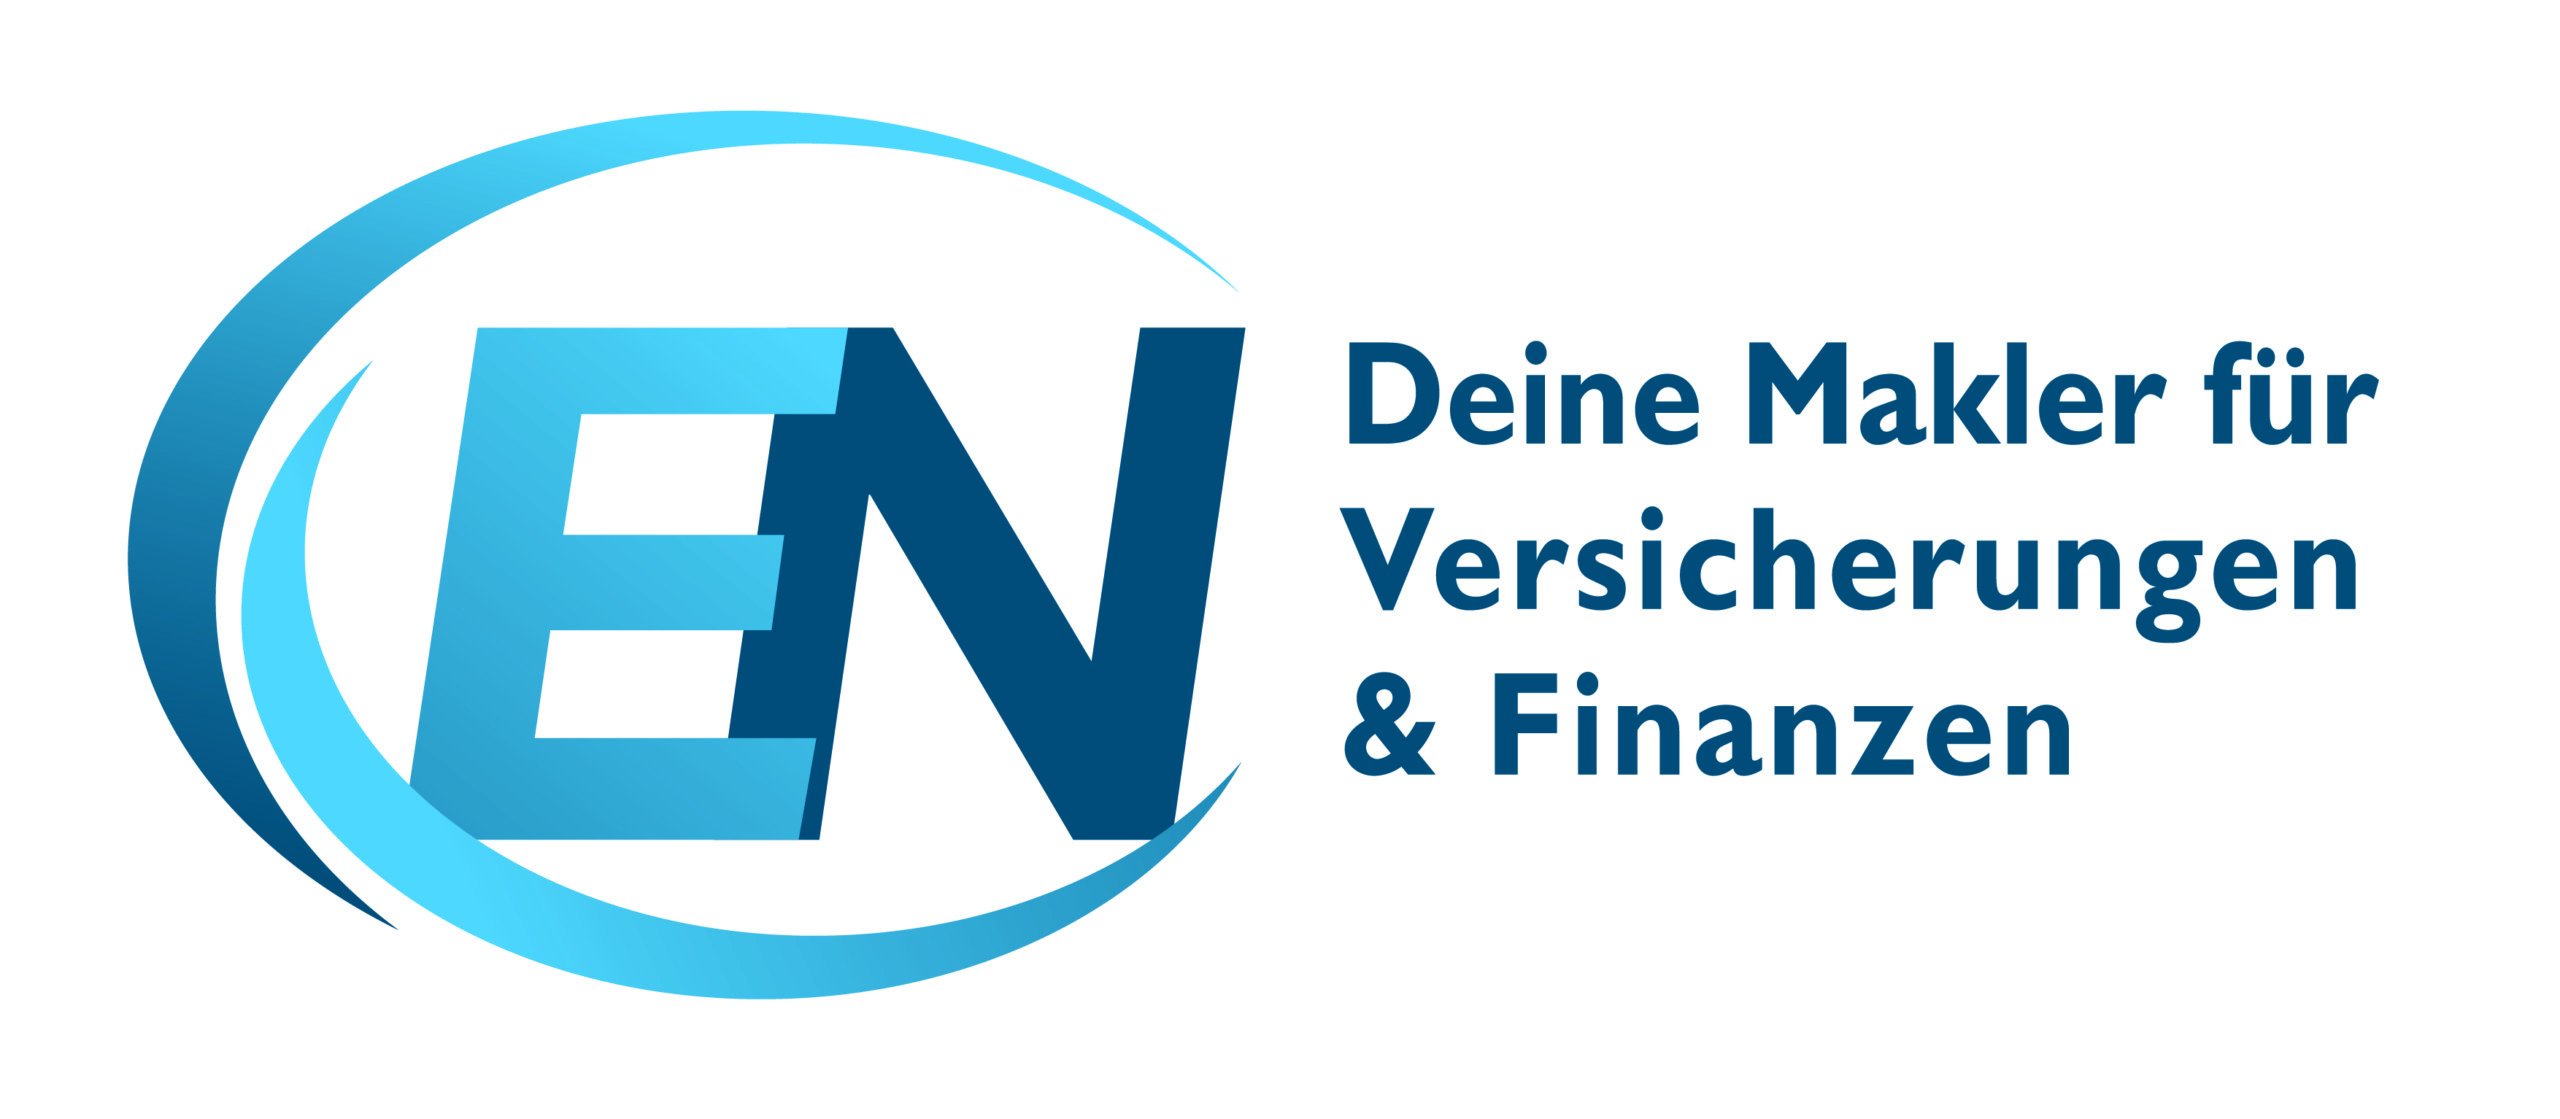 Emmerich & Nolden GmbH & Co. KG – Deine Makler für Versicherungen und Finanzen